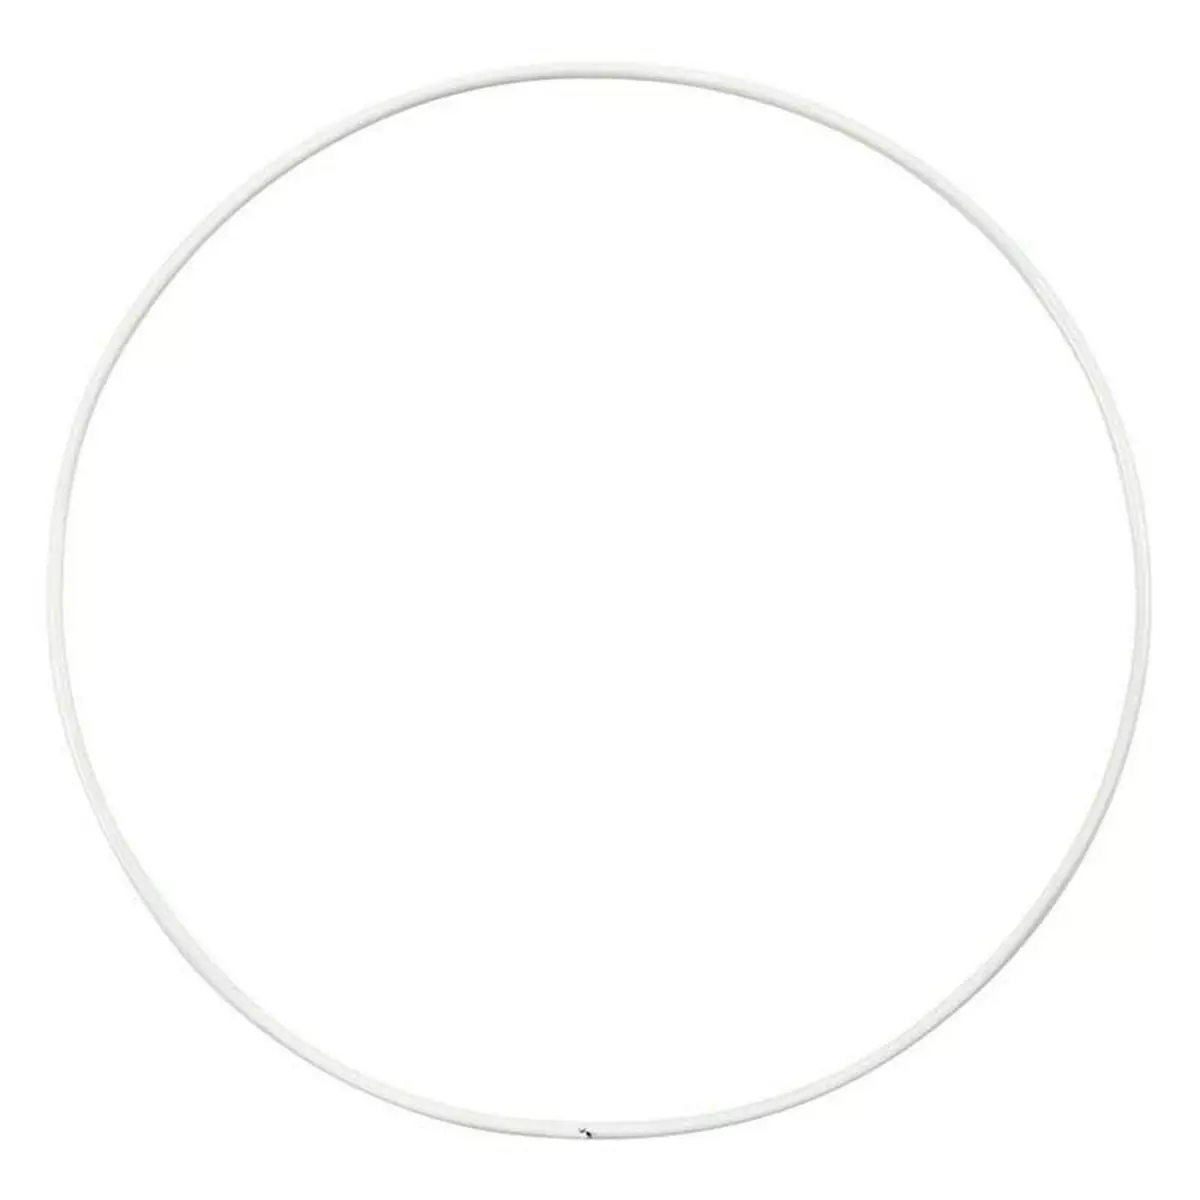  10 cercles en métal blanc - Ø 15 cm